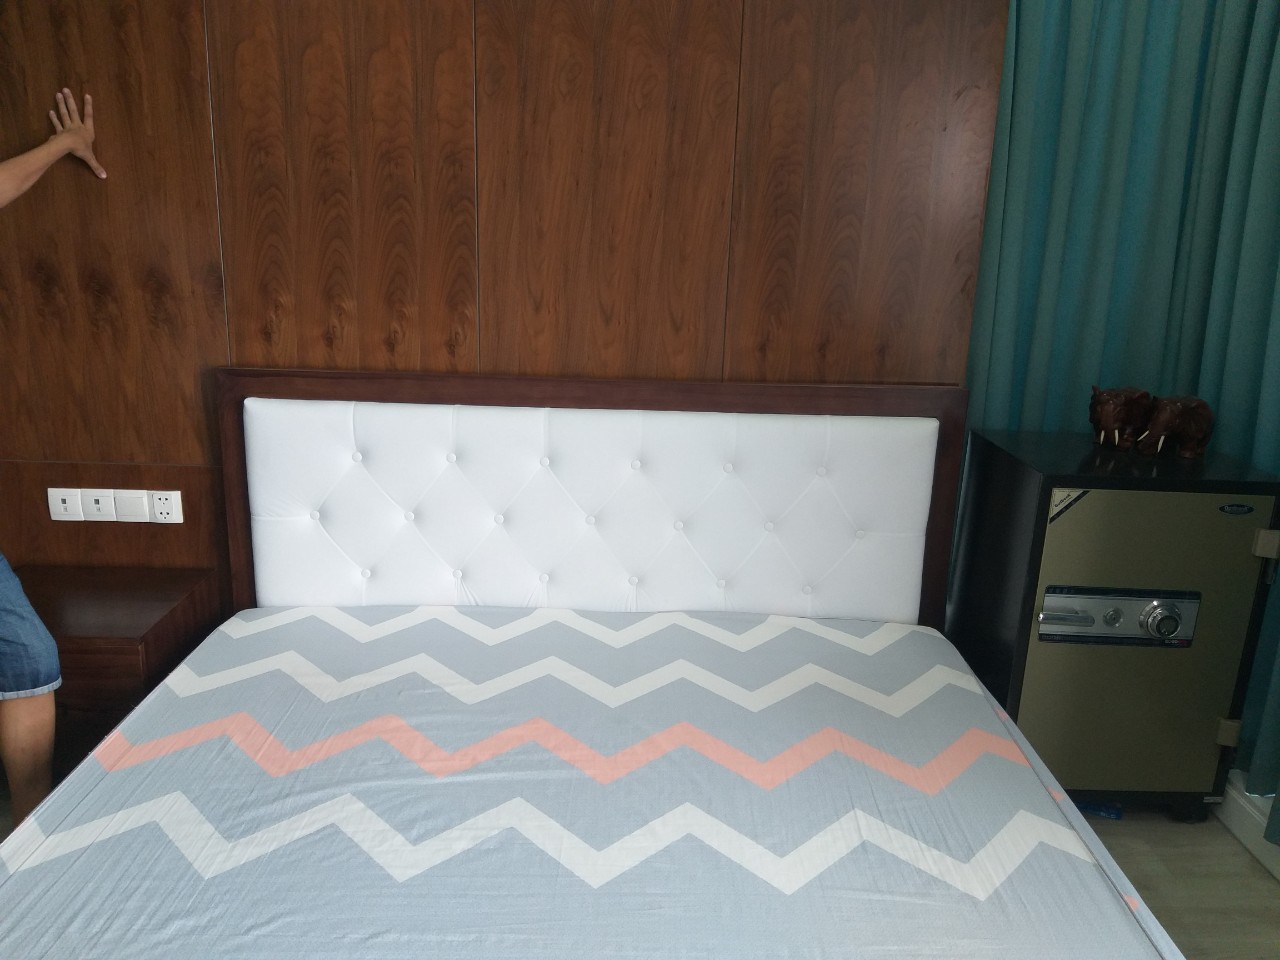 giường ngủ gỗ tự nhiên giá rẻ tphcm